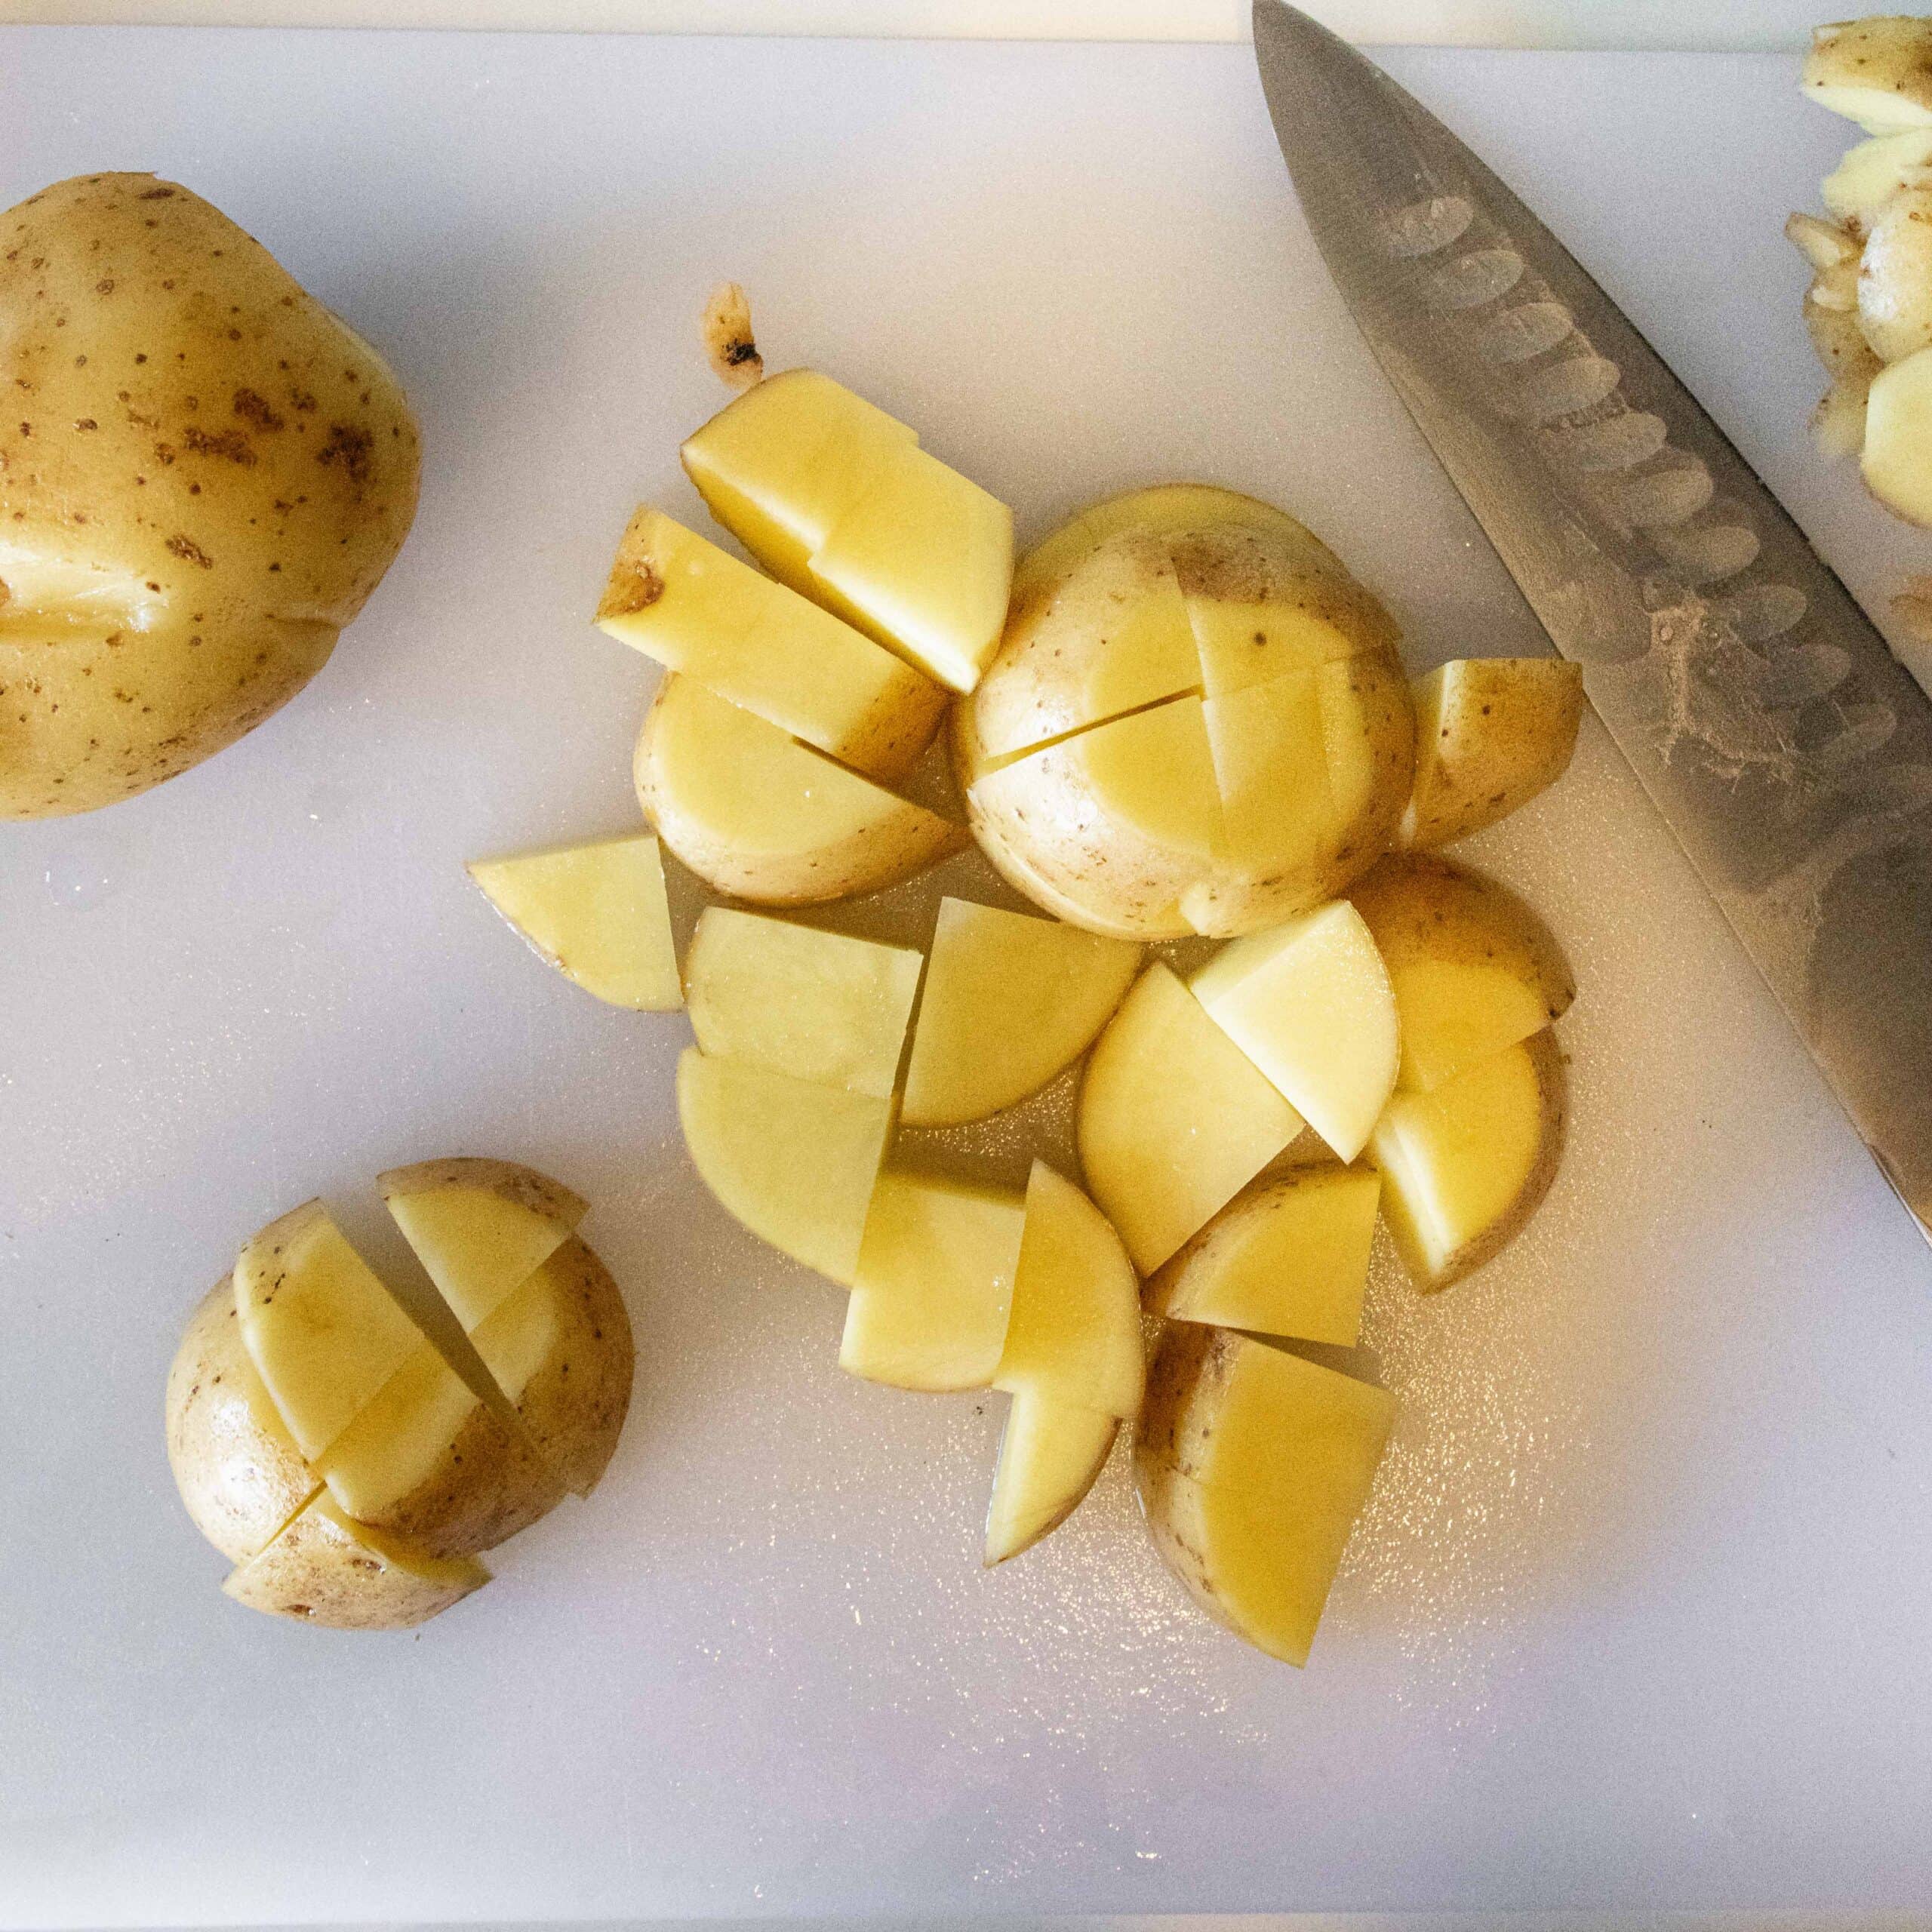 Cut potatoes